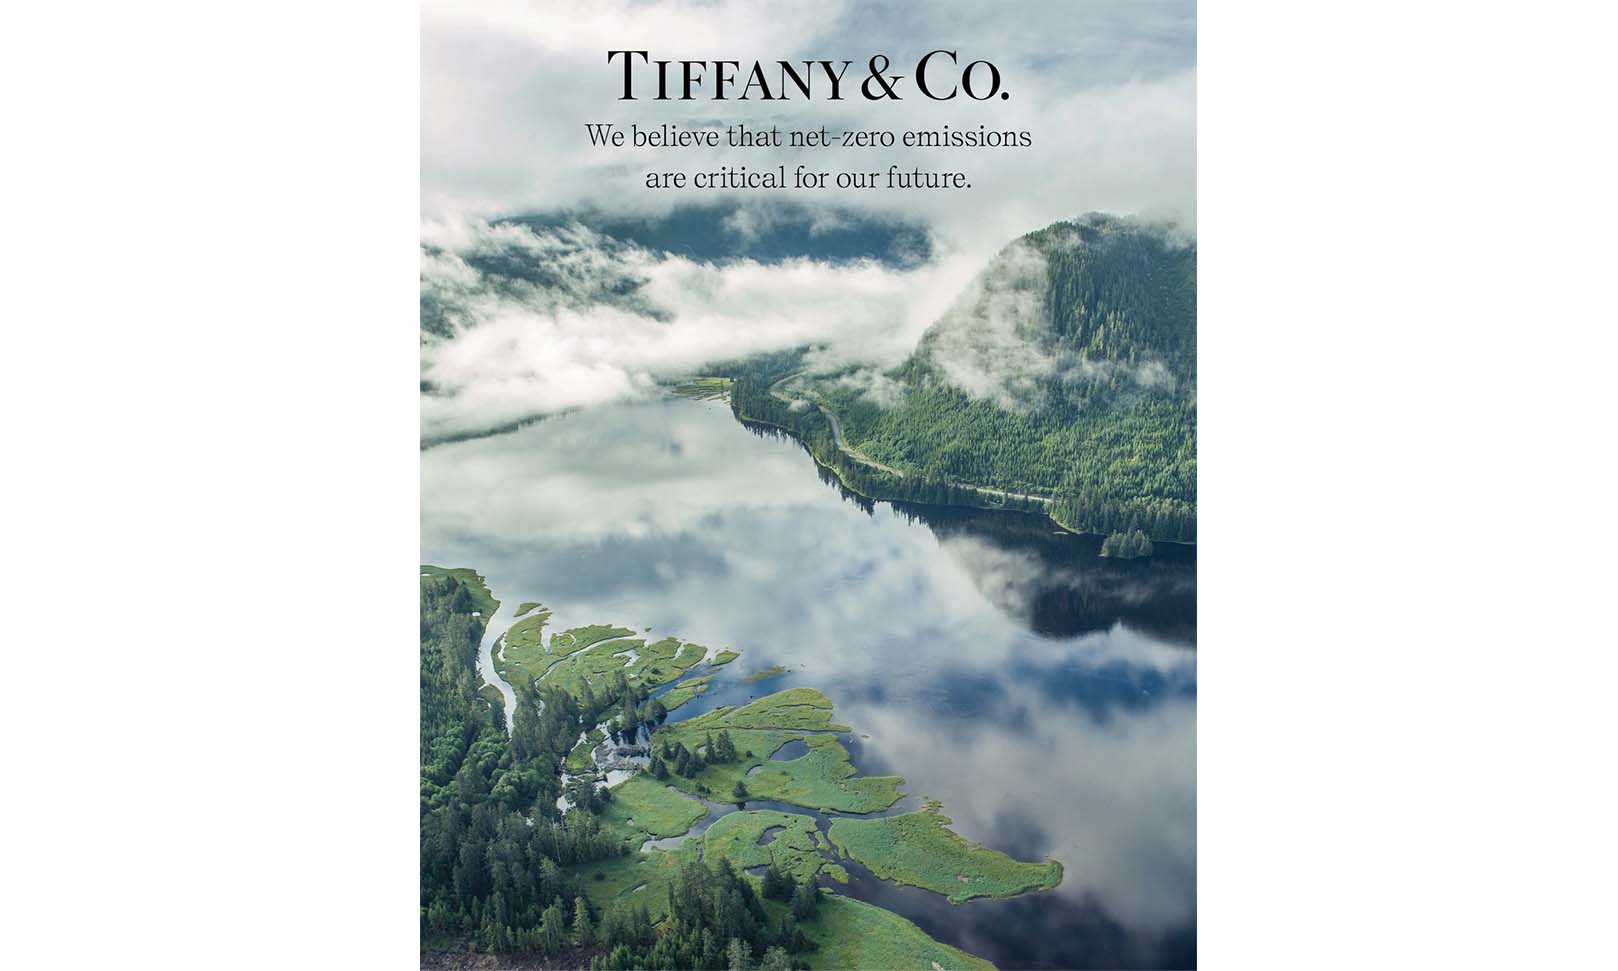 使用可回收材料，Tiffany & Co. 承诺至 2040 年实现净零碳排放